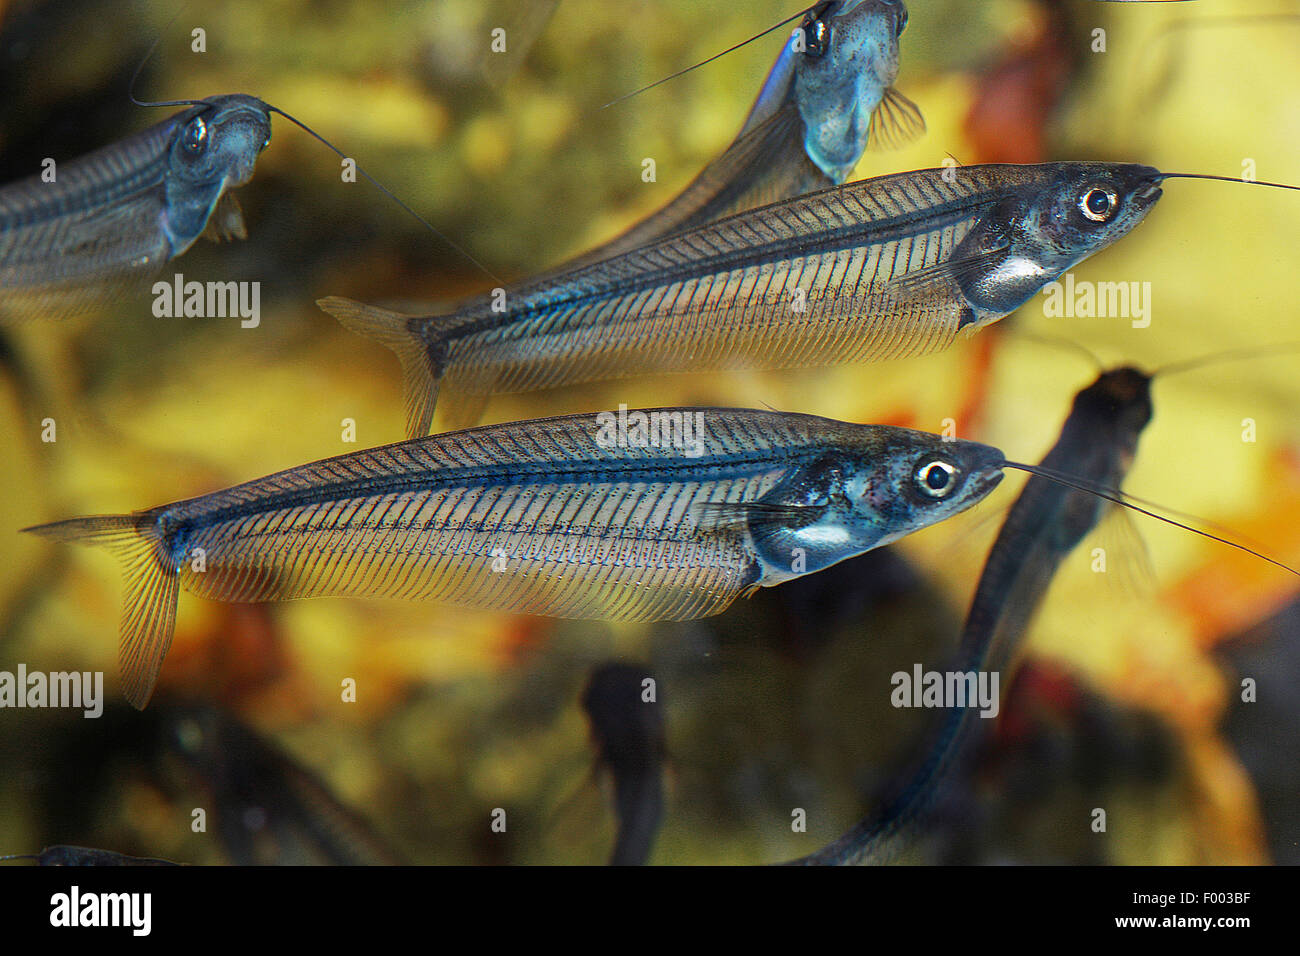 Pesce gatto di vetro, ghost catfish (Kryptopterus bicirrhis), diversi catfishes in vetro Foto Stock